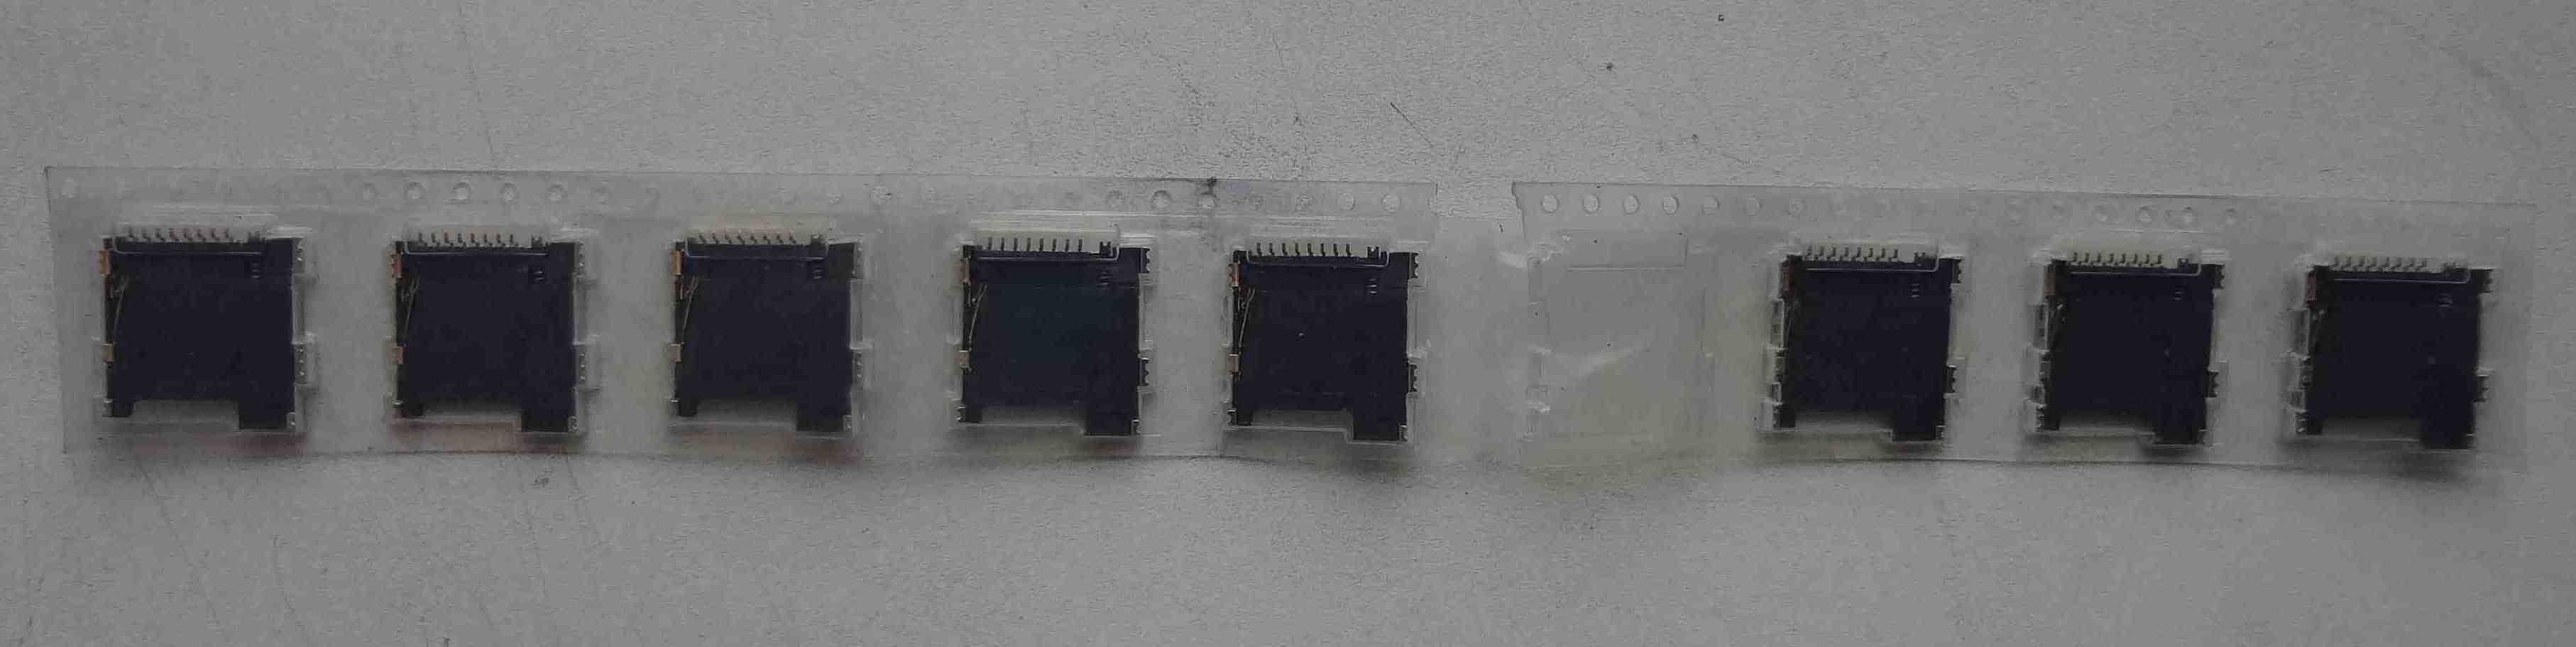 Разъемы microSD карт памяти